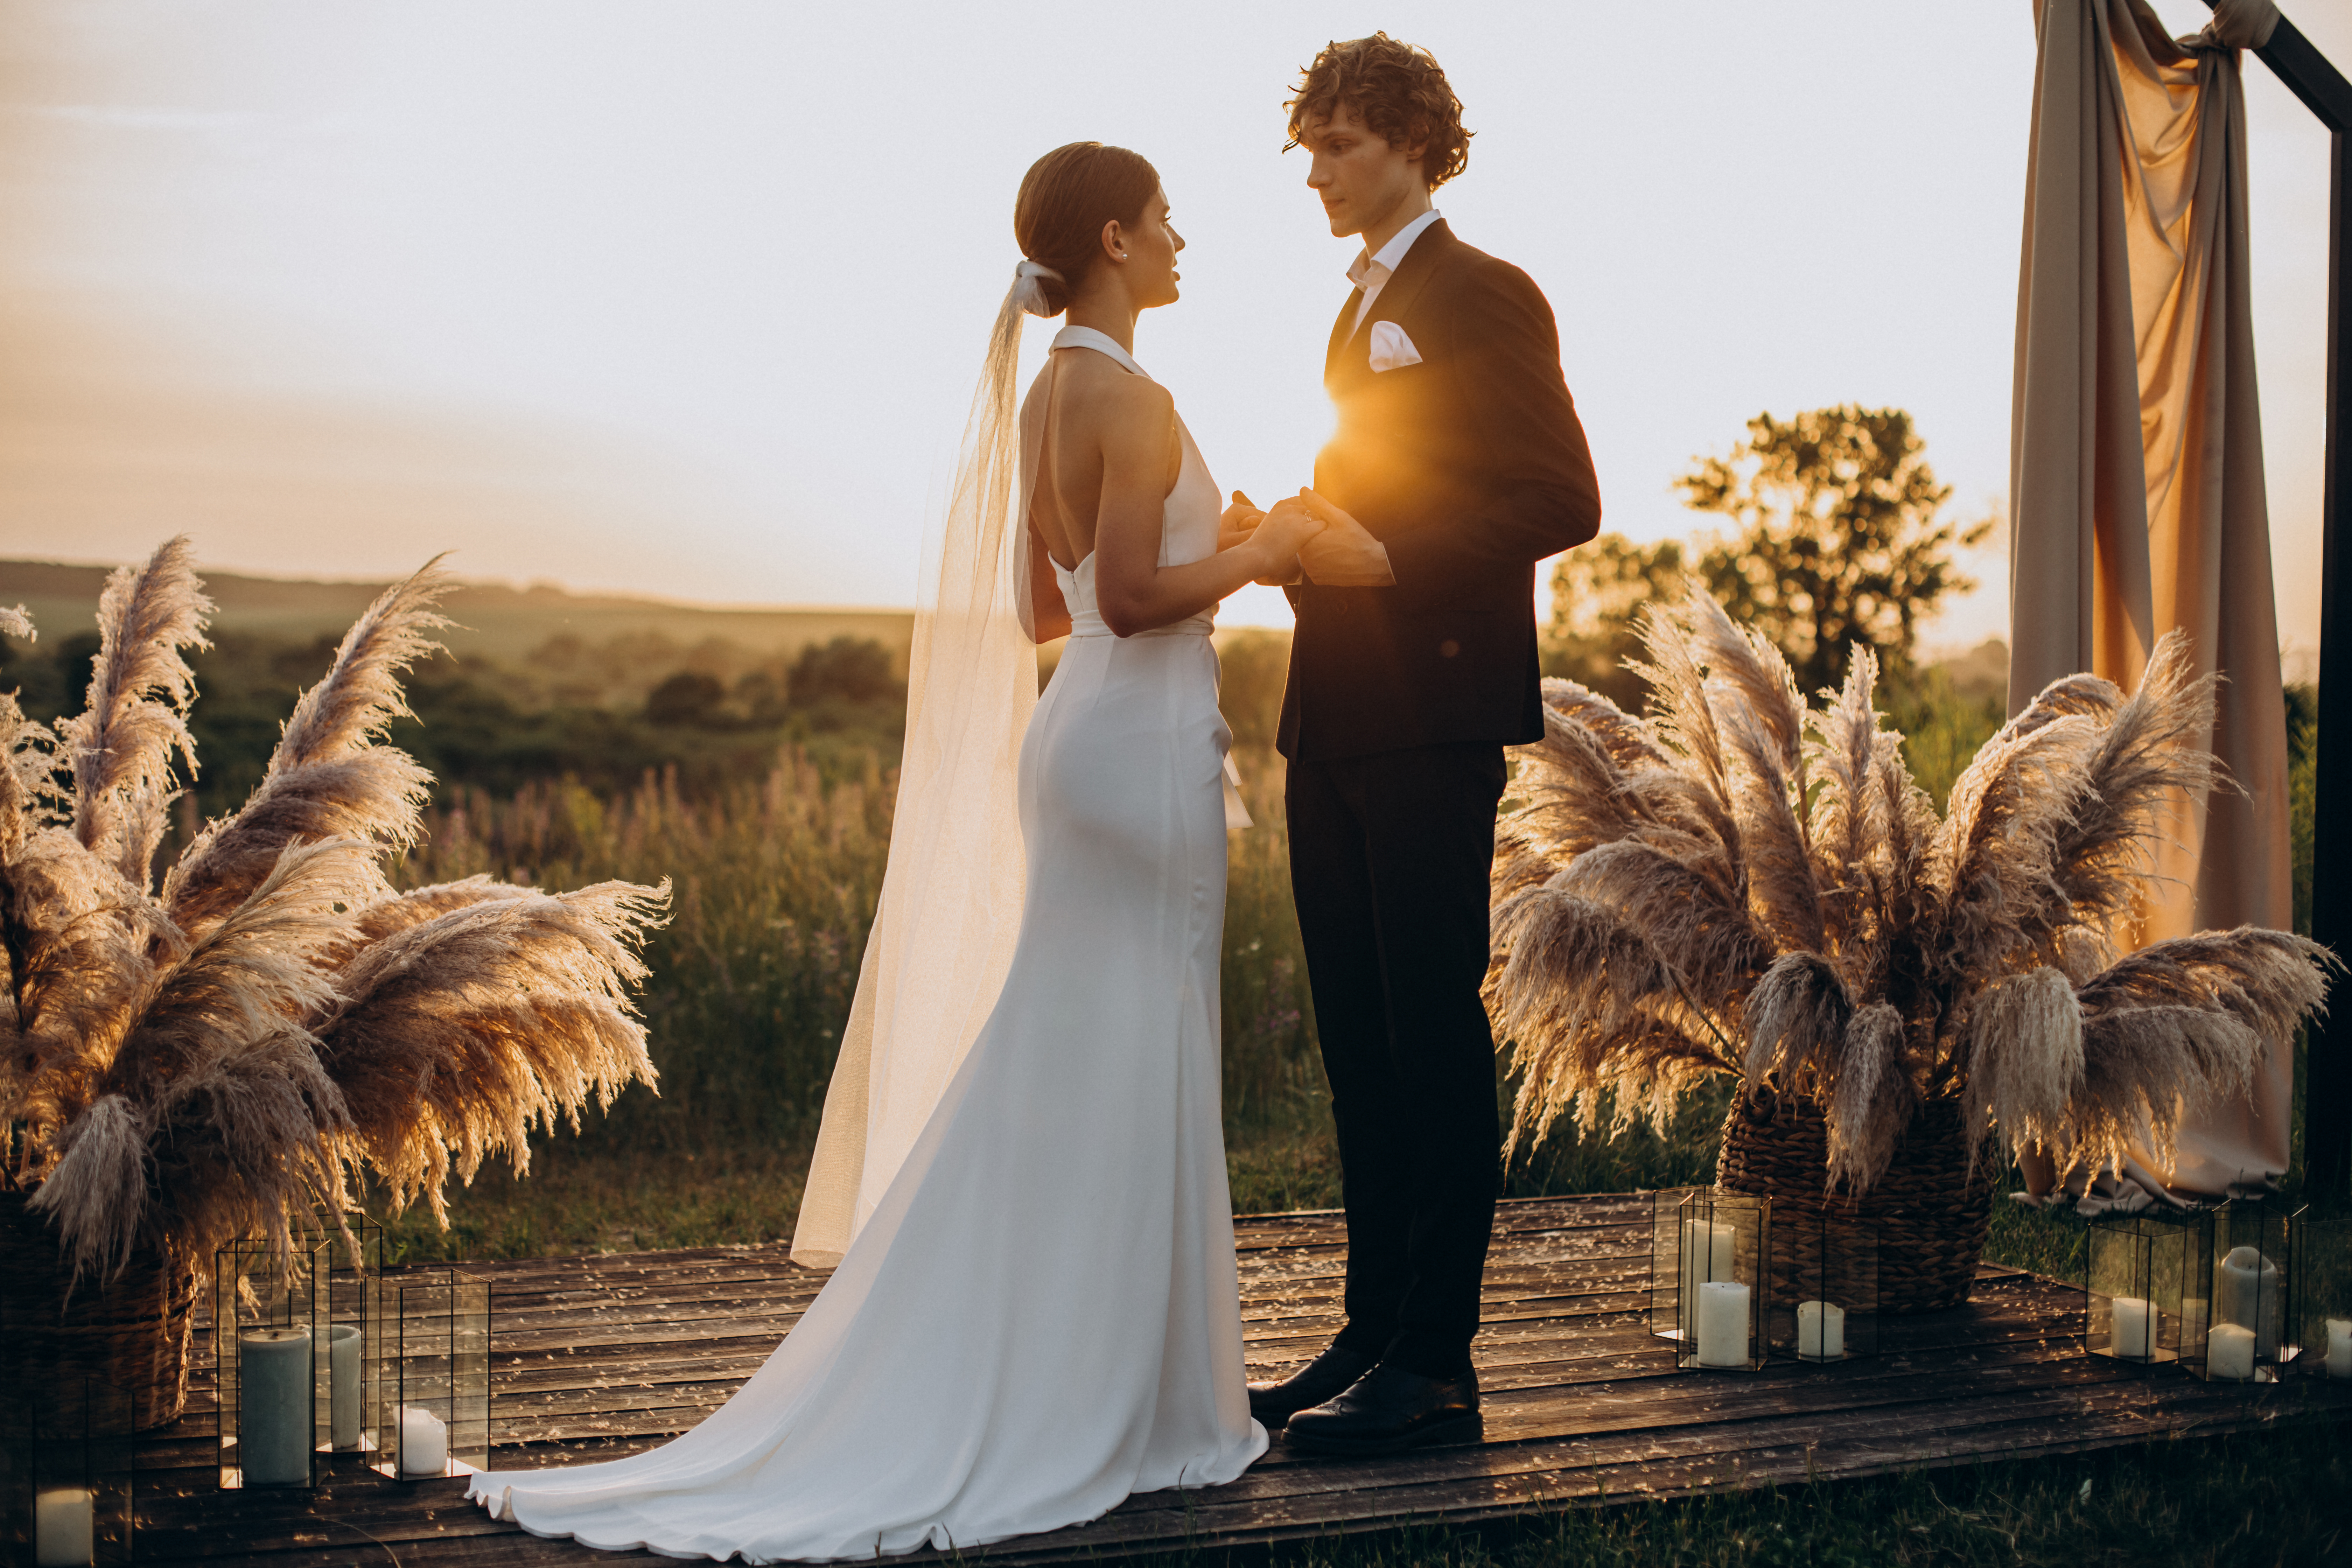 Un couple qui se marie | Source : Shutterstock